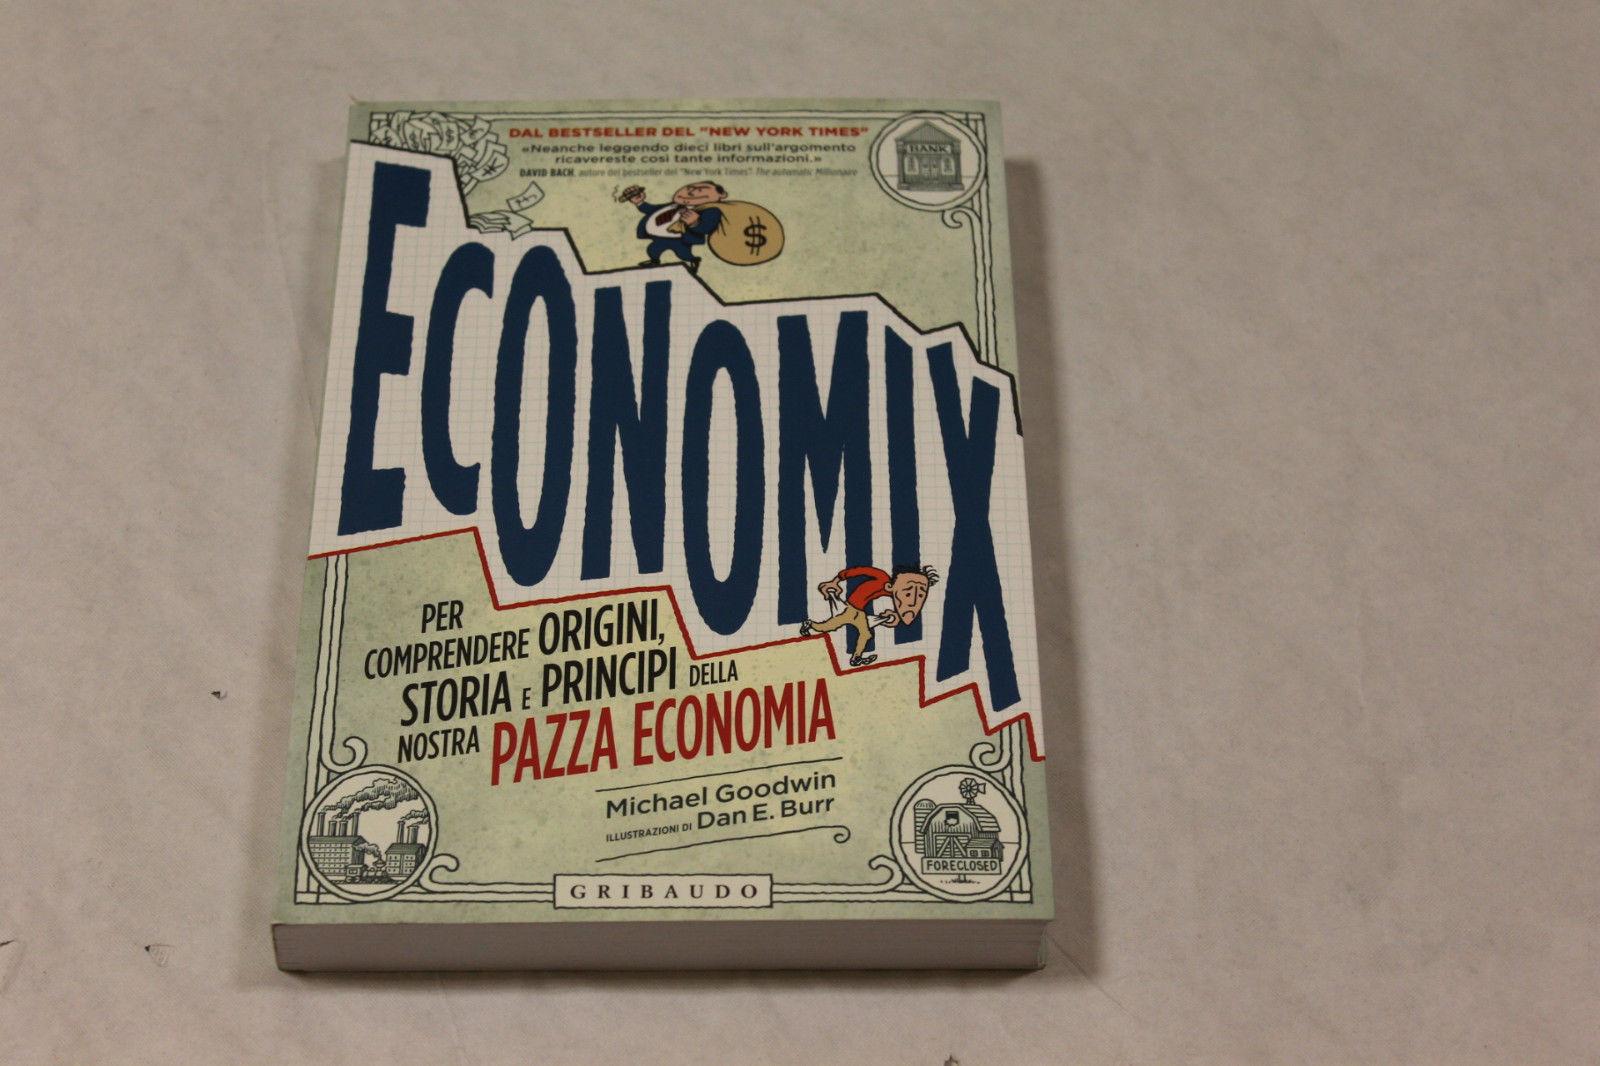 Economix, per comprendere origini, storia e principi della nostra pazza economia